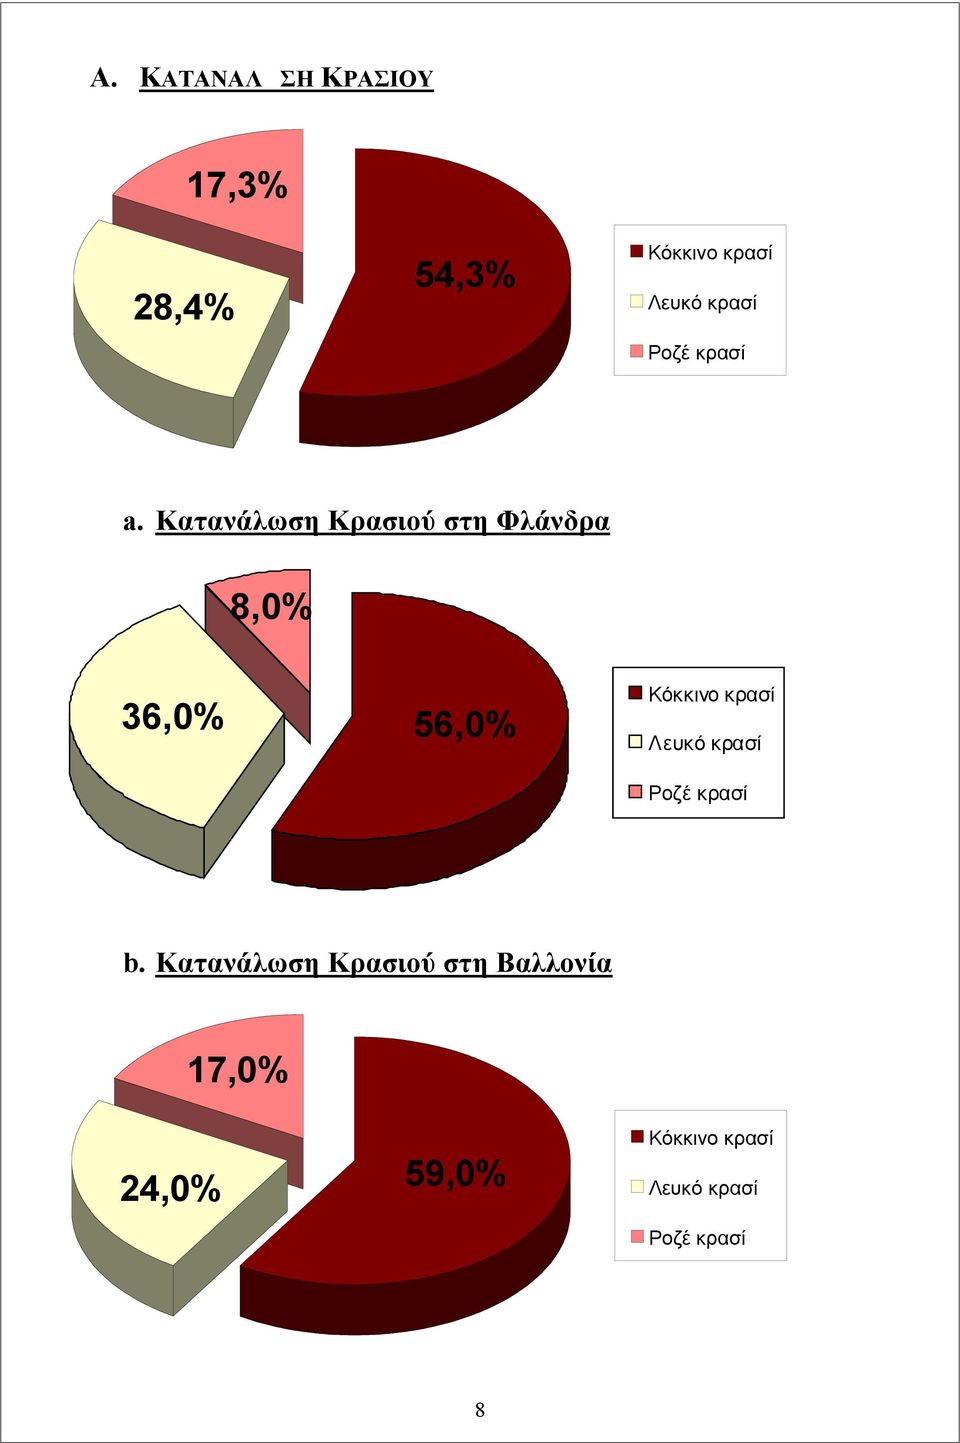 Κατανάλωση Κρασιού στη Φλάνδρα 8,0% 36,0% 56,0% Κόκκινο κρασί